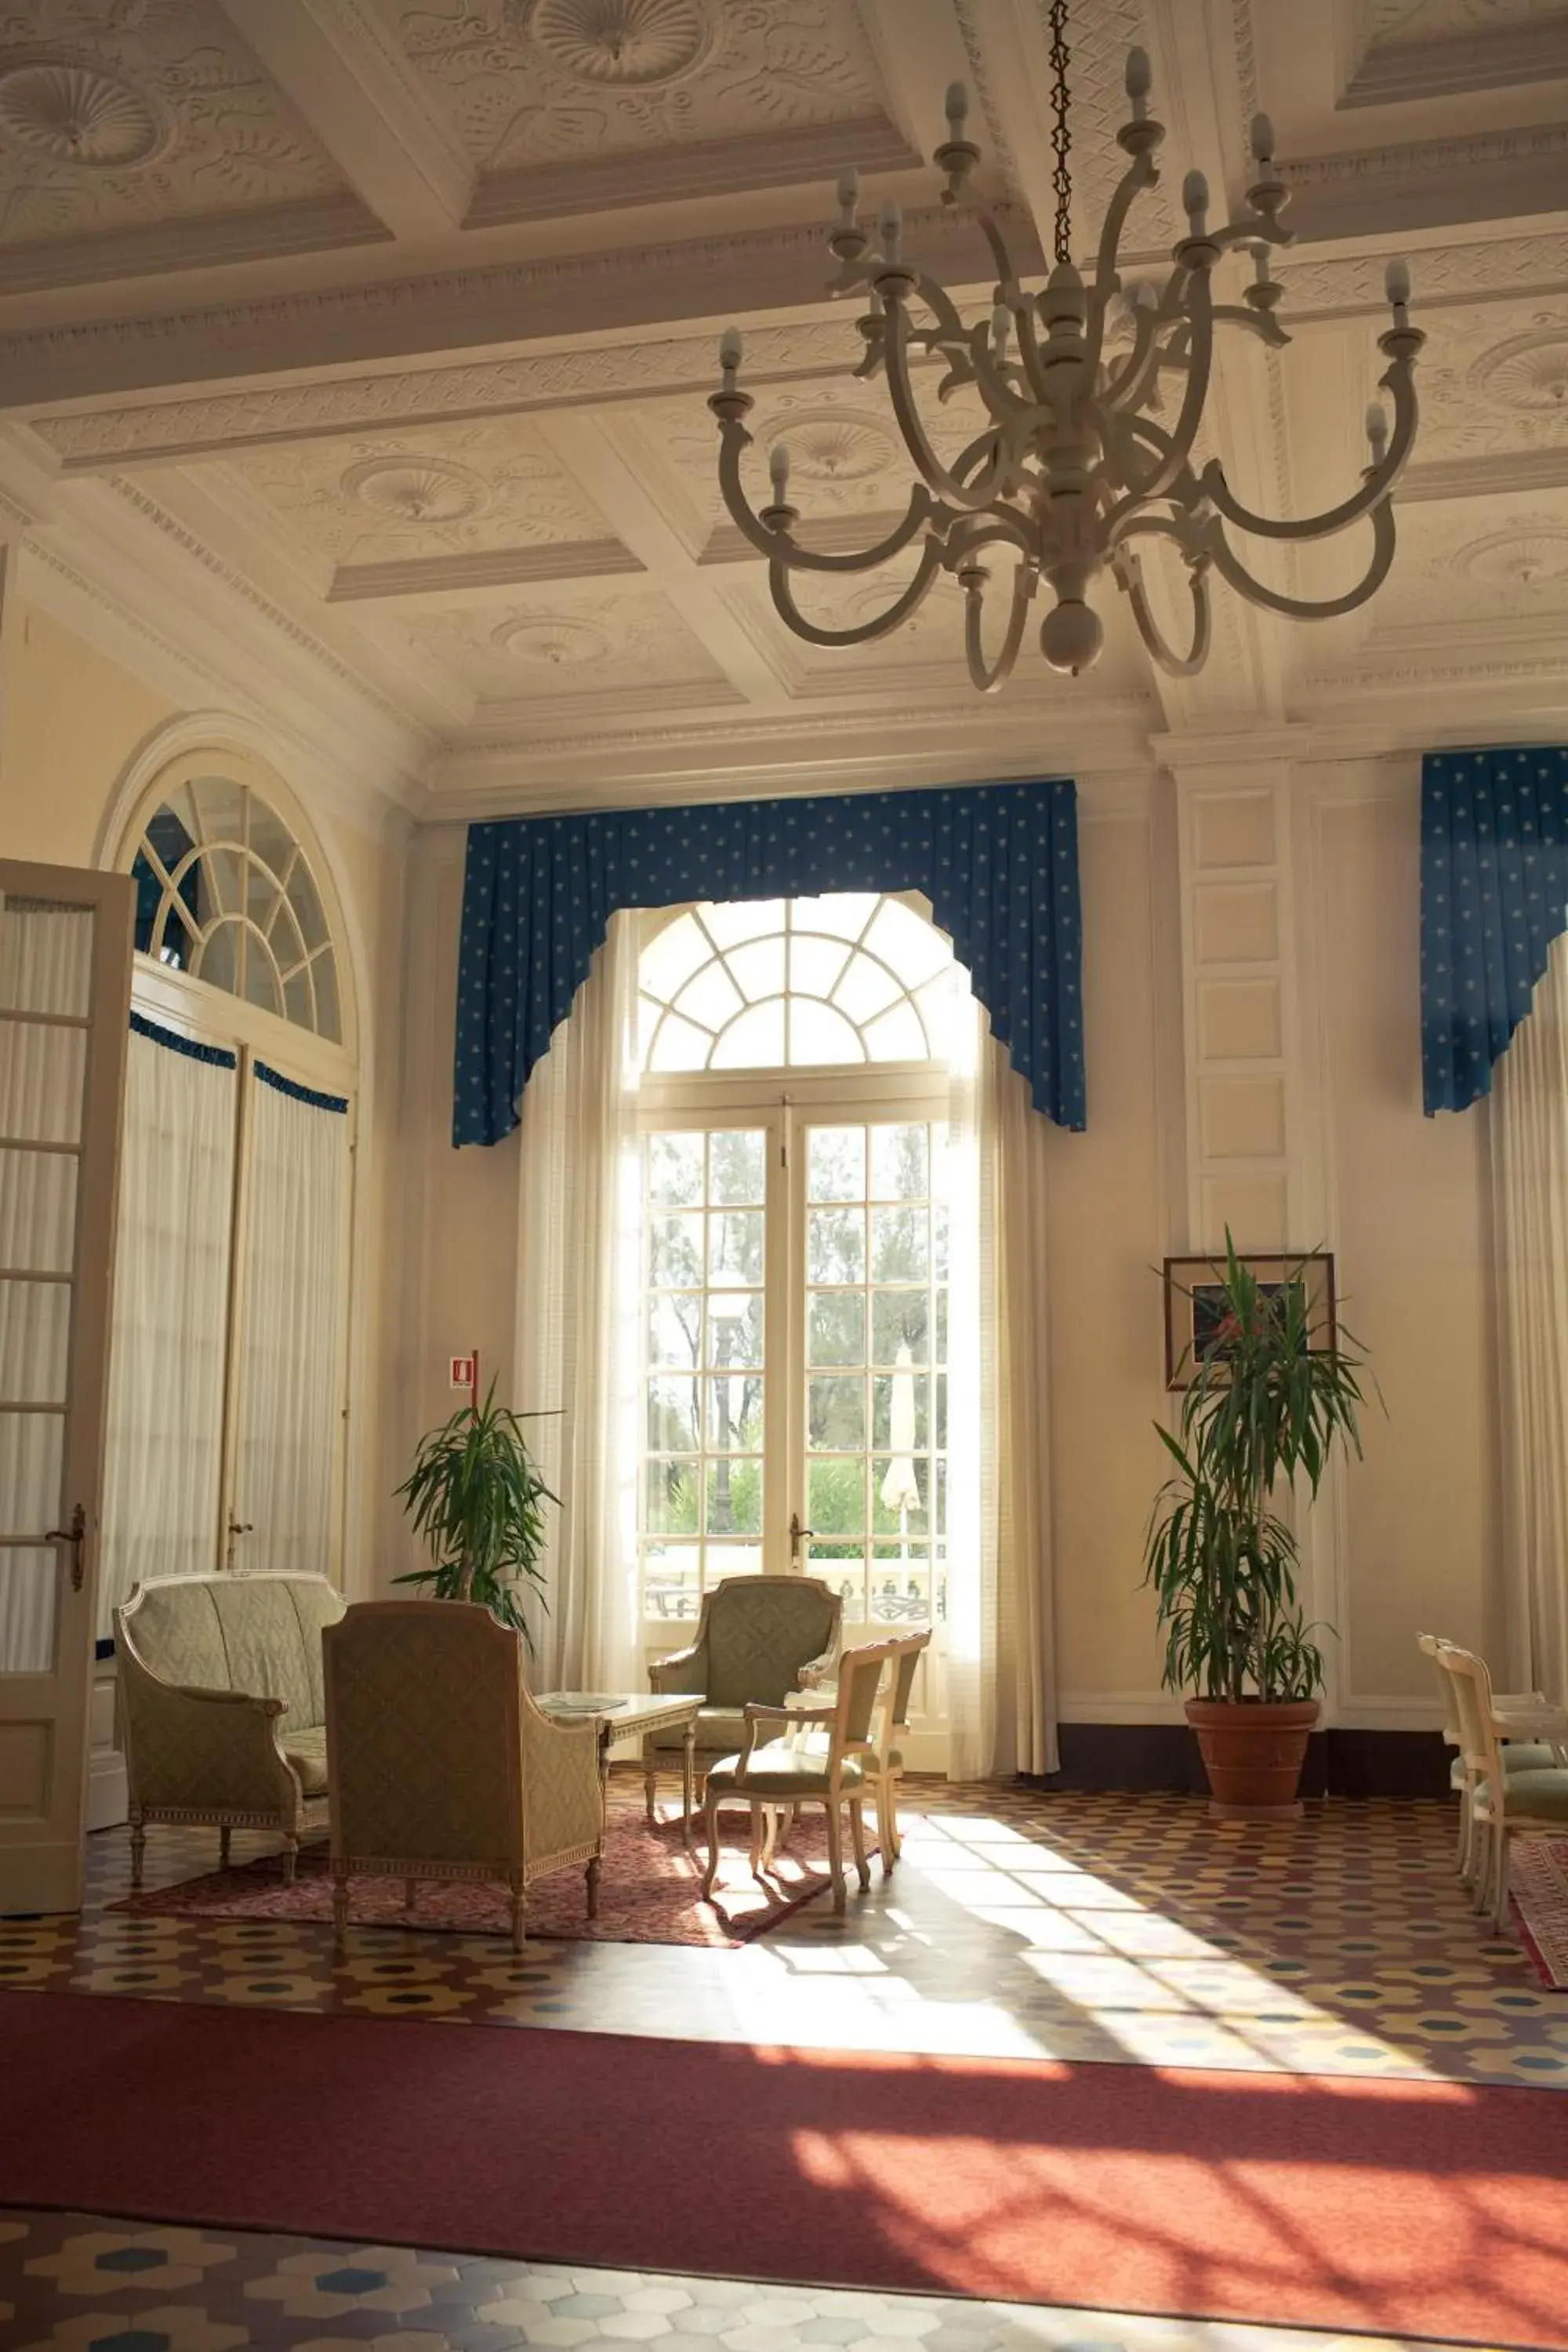 Lobby or reception in Grand Hotel Cesenatico